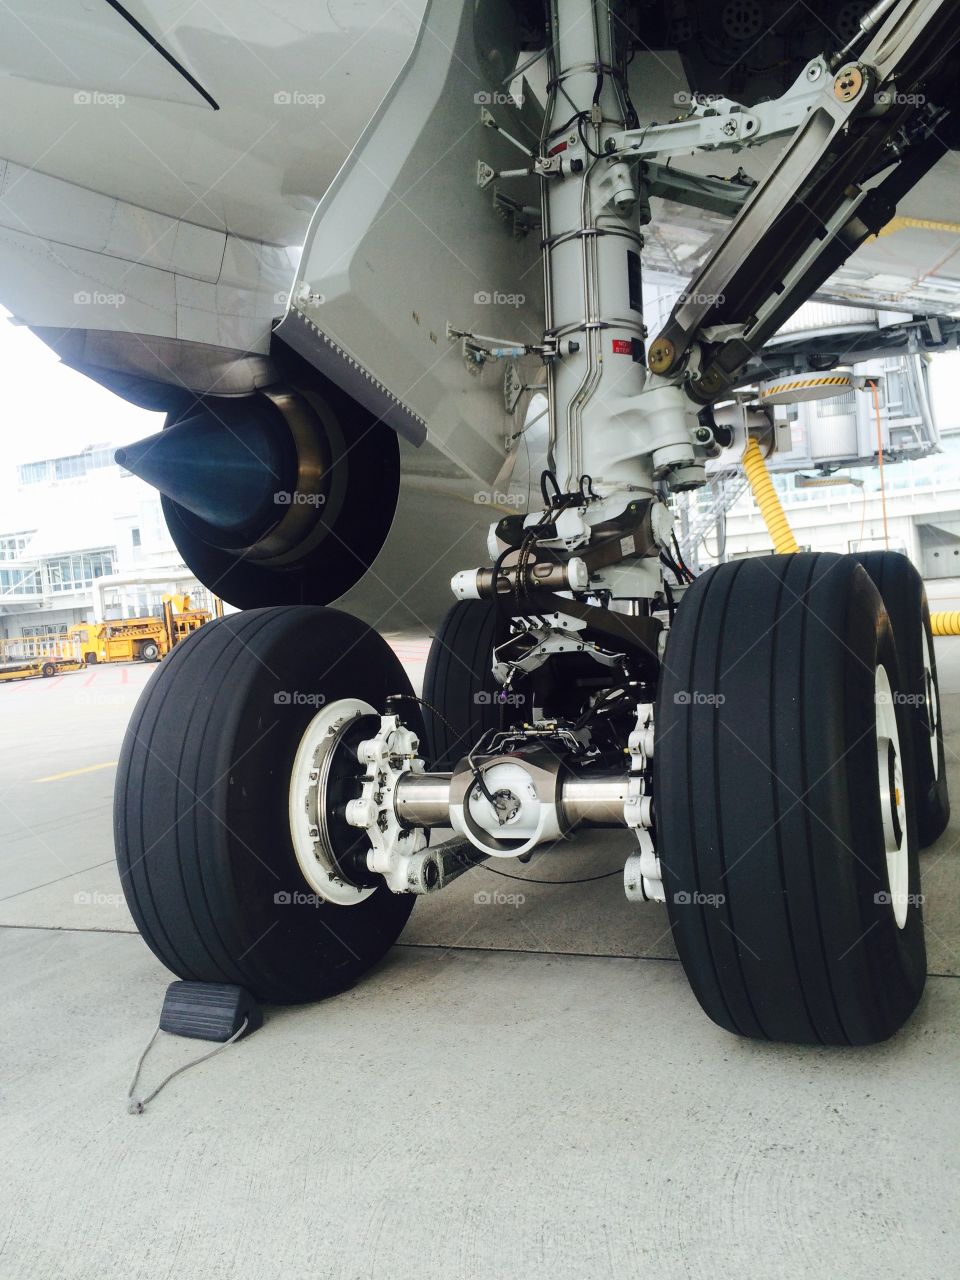 aircraft wheels